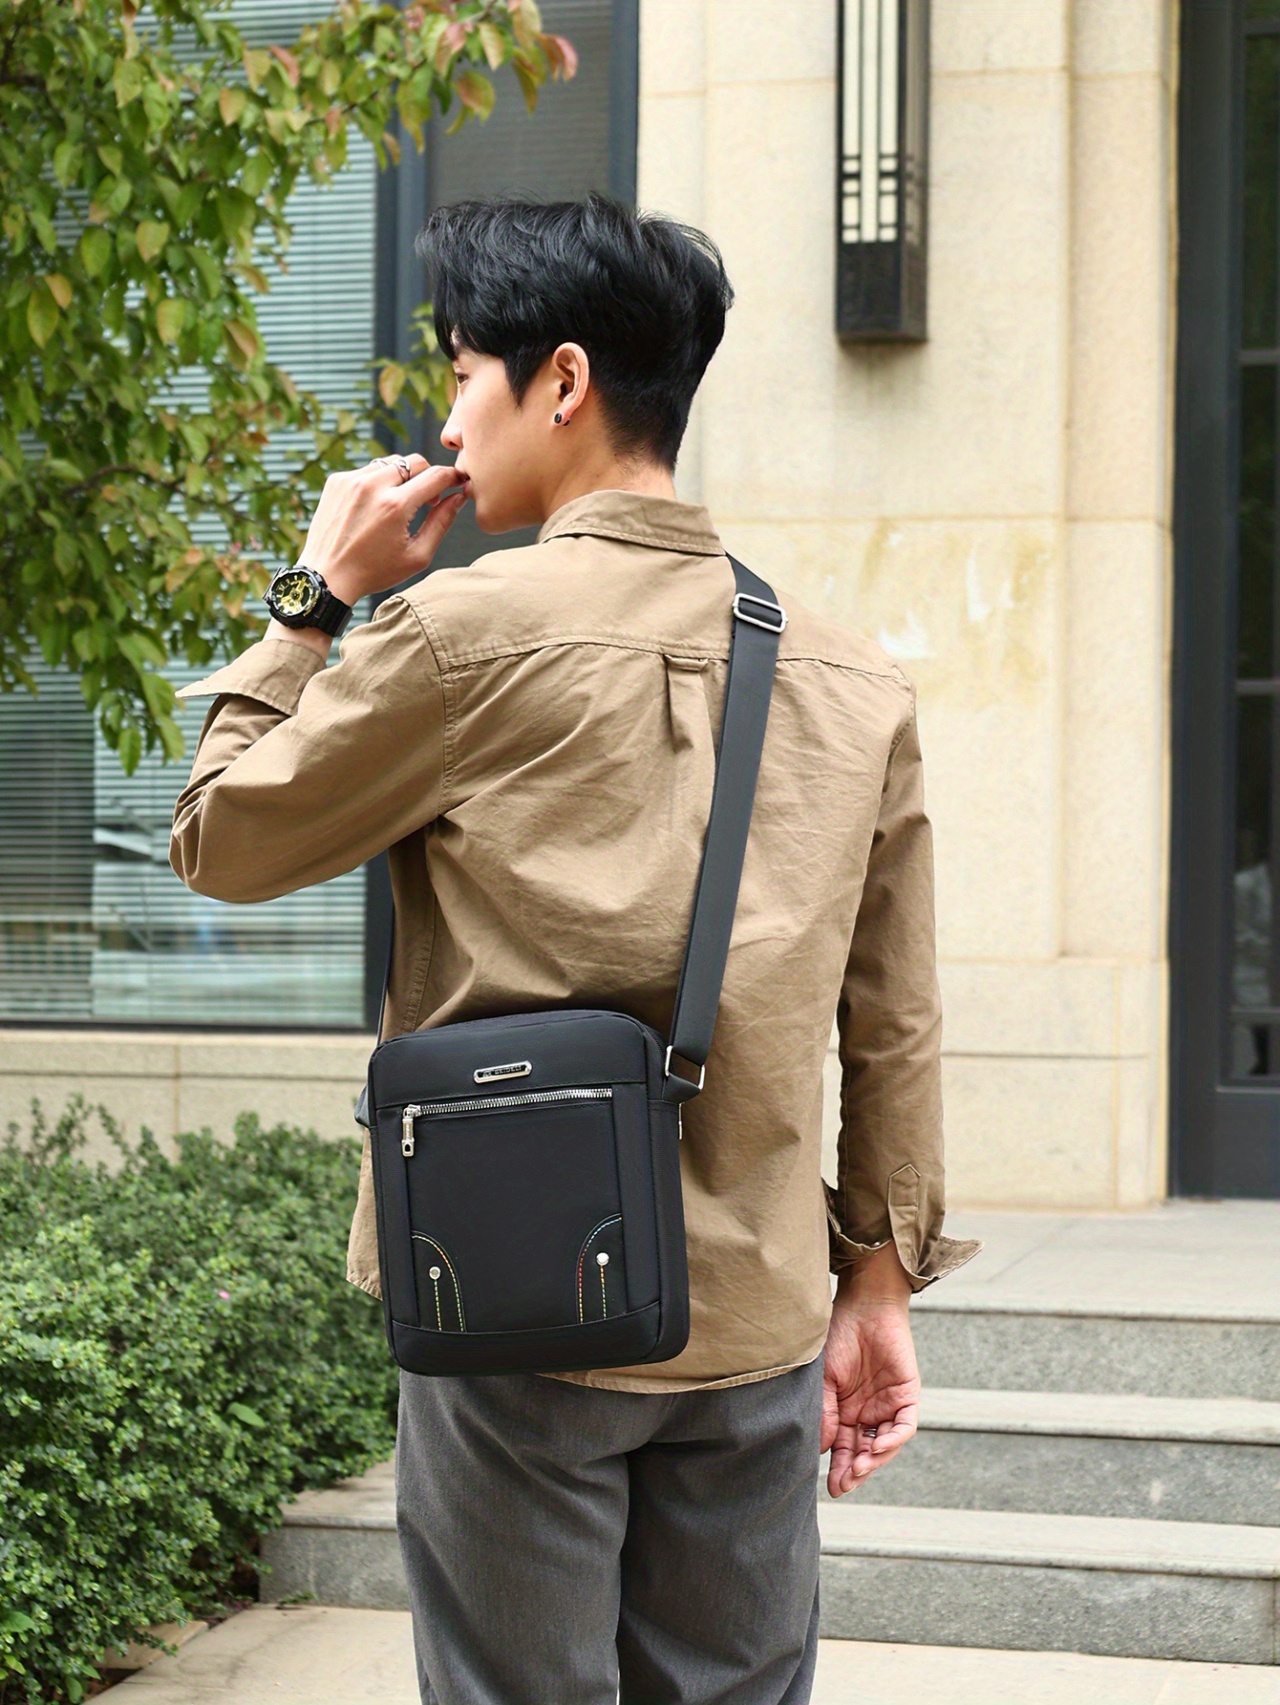 Men Fashion Multifunction Shoulder Bag Crossbody Bag On Shoulder Travel Sling Bag